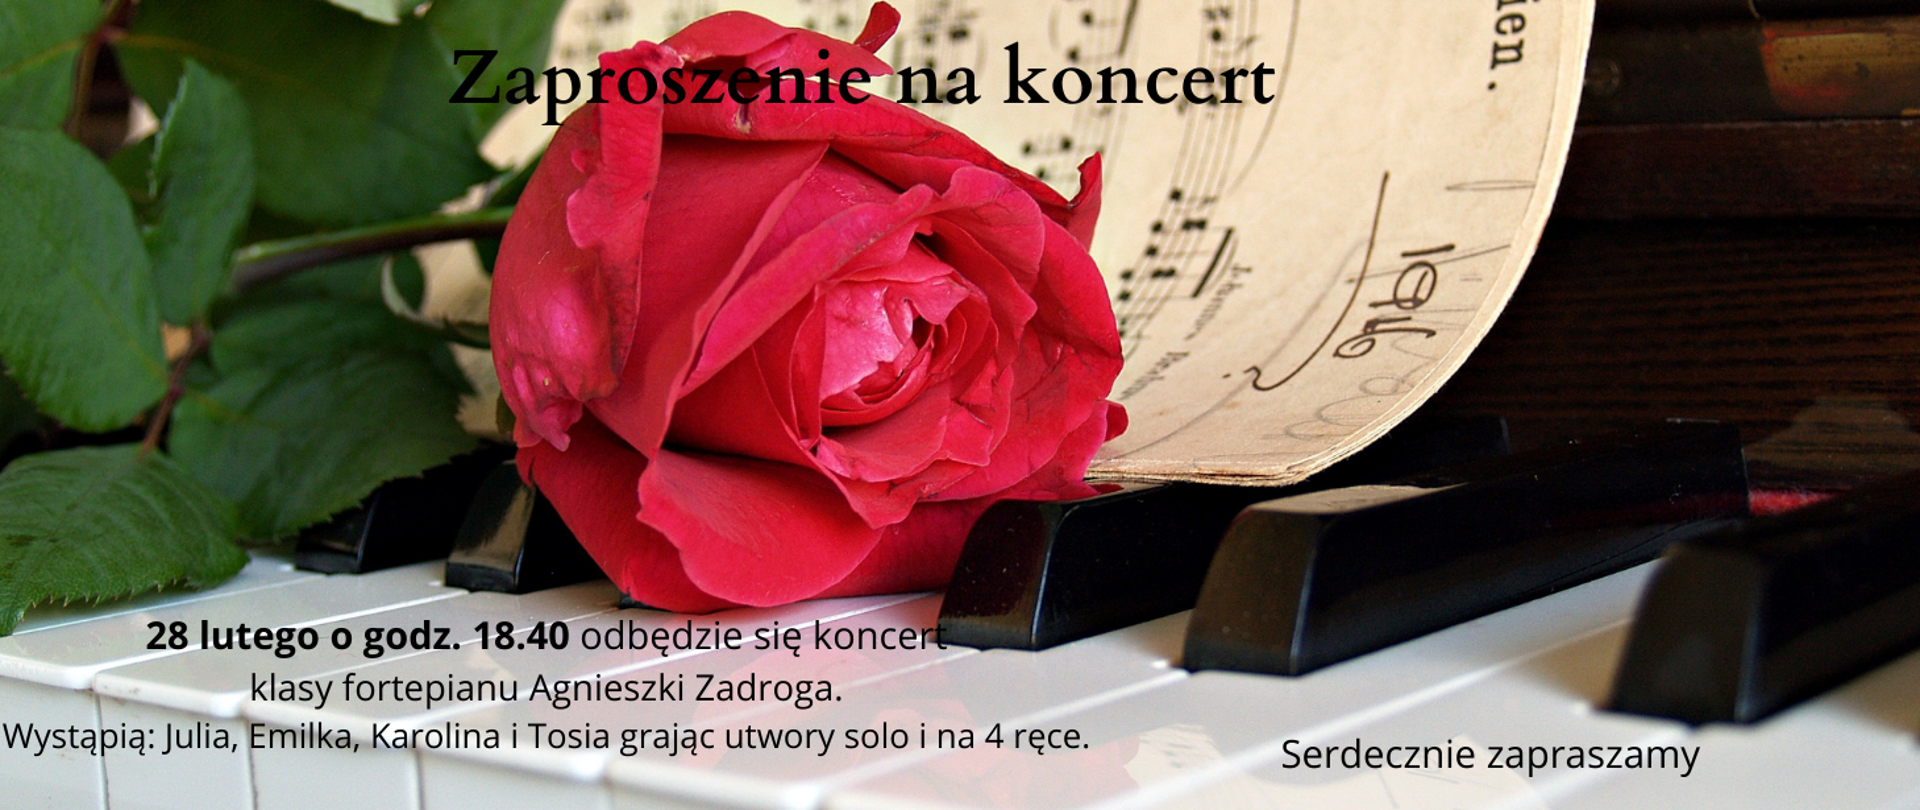 Zdjęcie w tle przedstawiające klawiaturę fortepianu, na której leży czerwona róża i nuty Rapsodii. Litery są czarne umieszczone w dolnej części klawiatury pod różą.